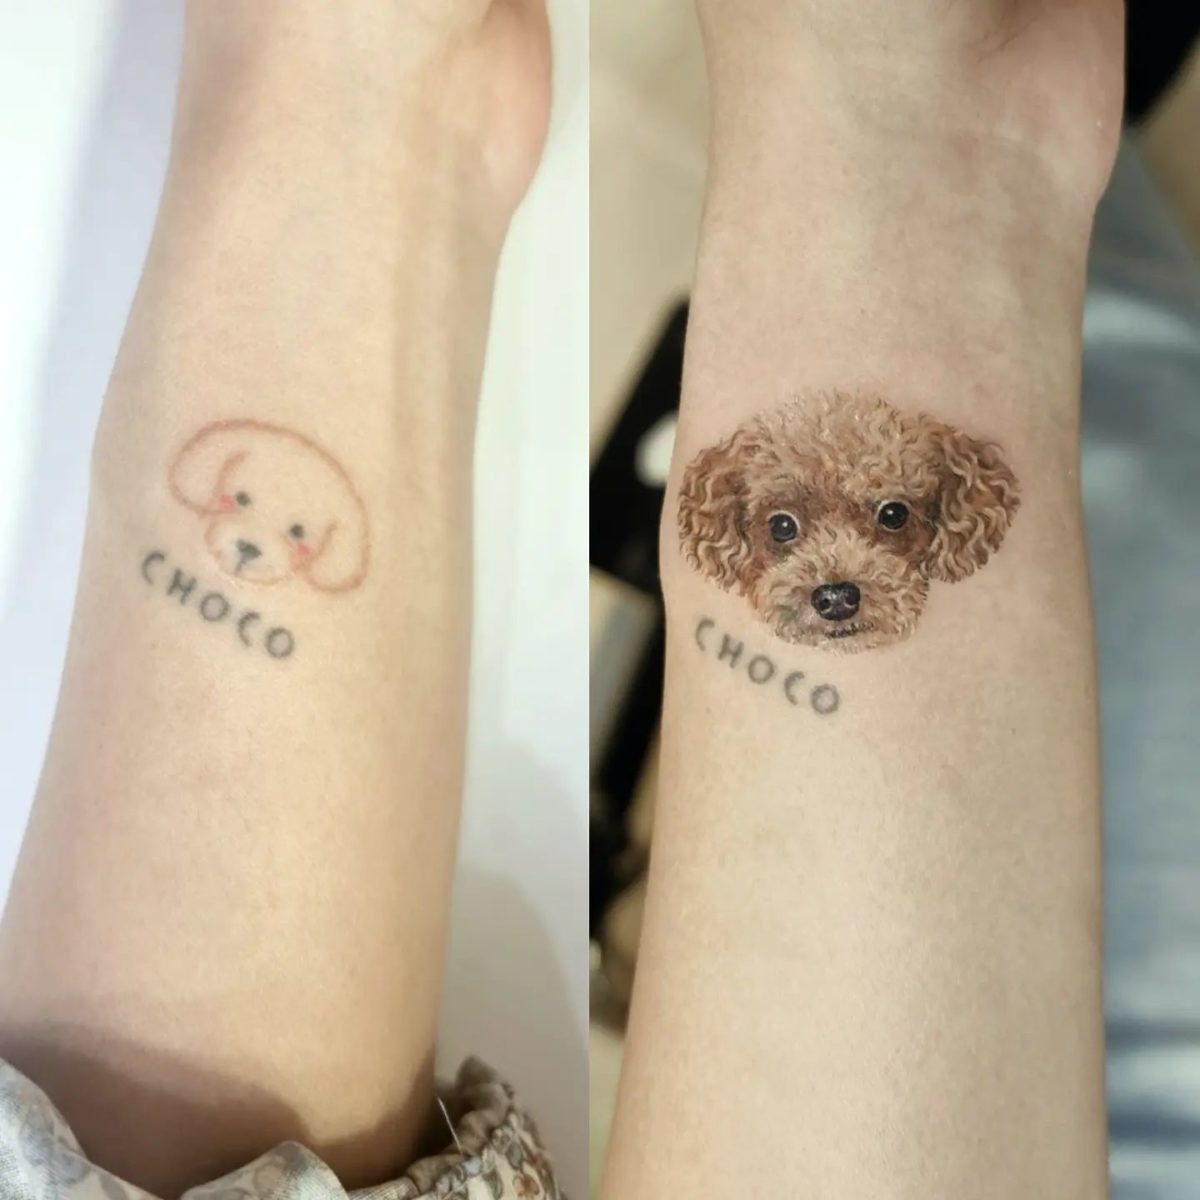 Tattoo Coverup Ideas